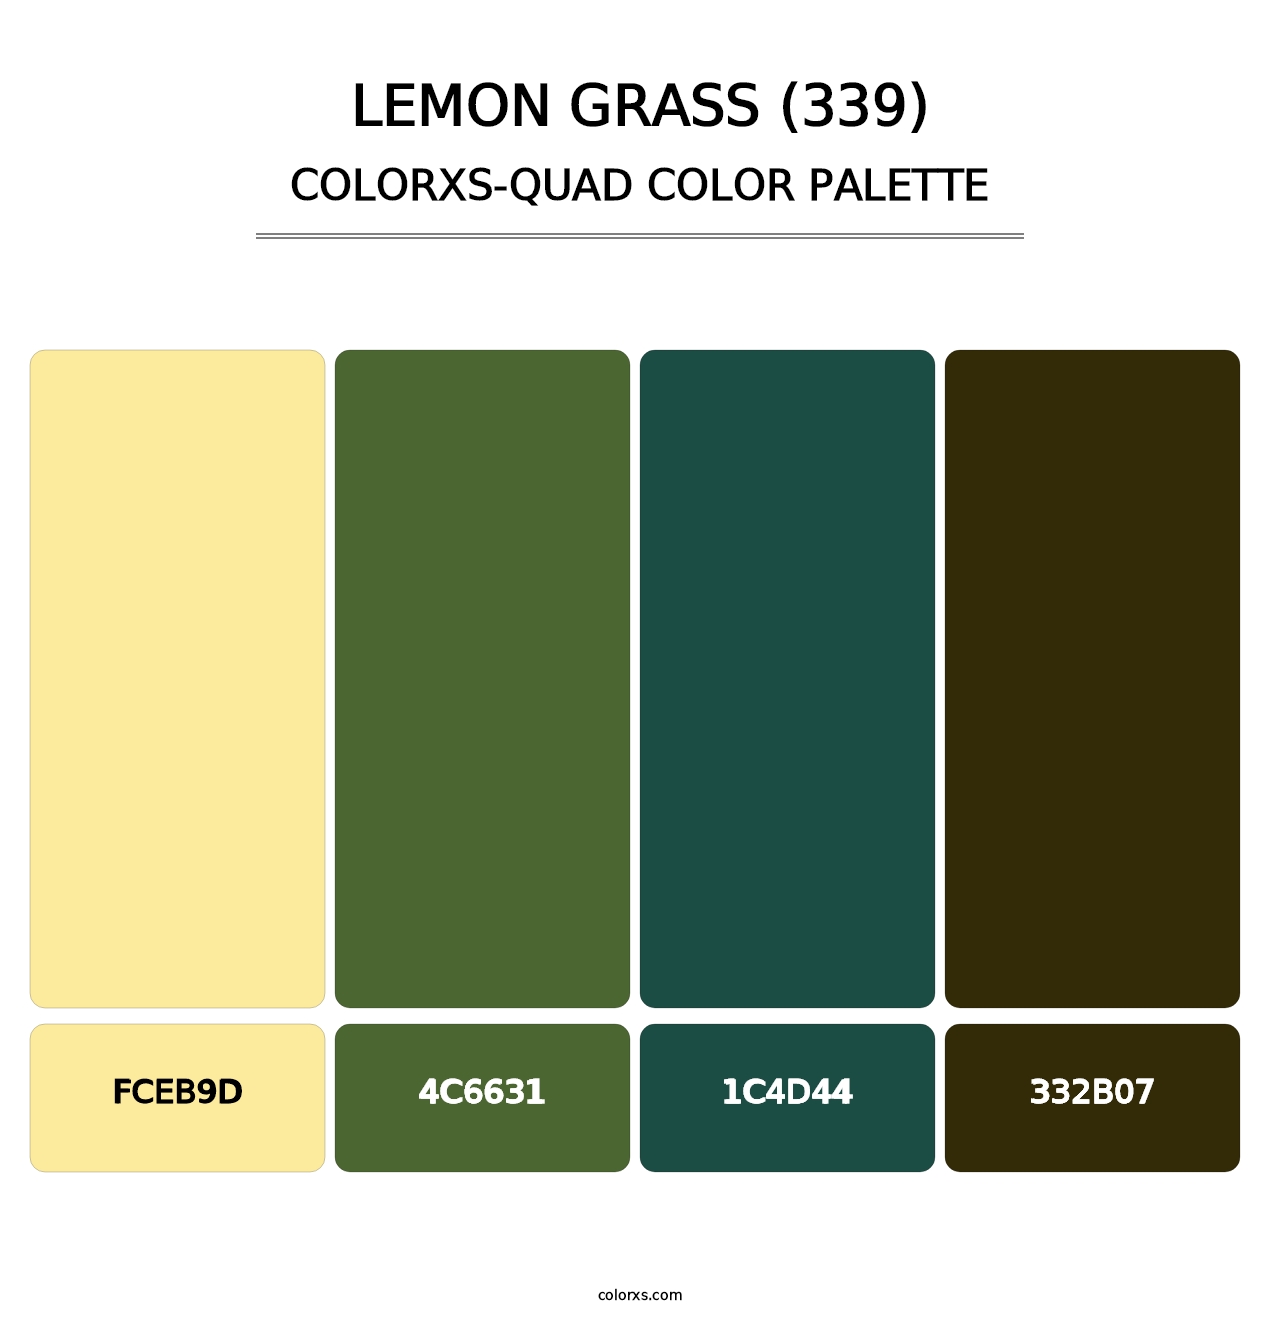 Lemon Grass (339) - Colorxs Quad Palette